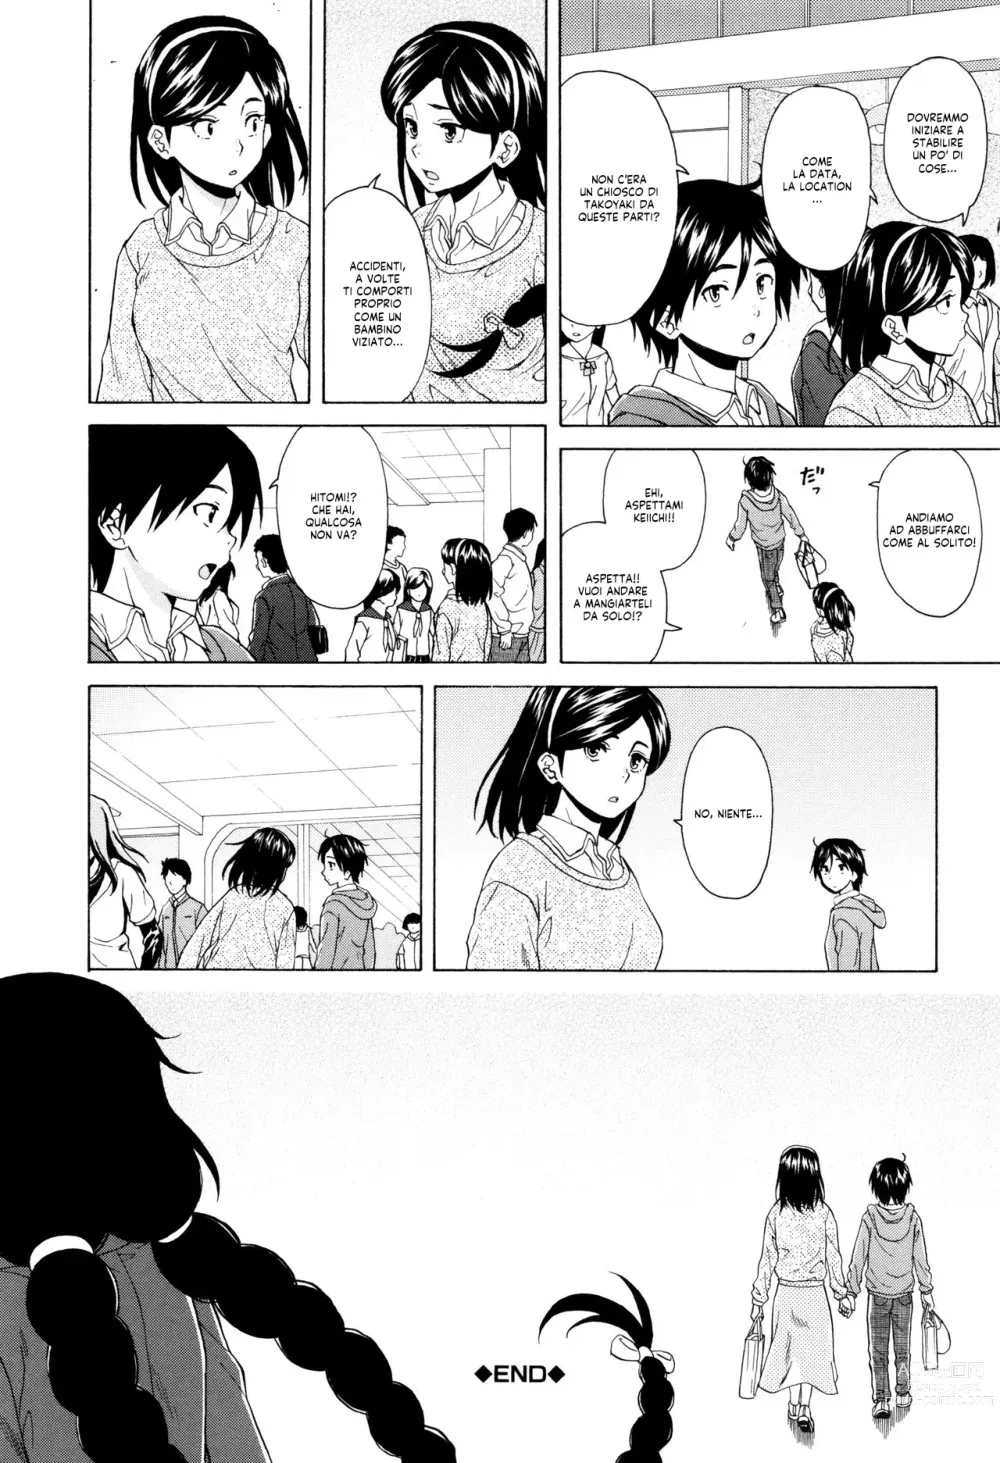 Page 208 of manga Segreti, Suicidi e Sorelle (decensored)